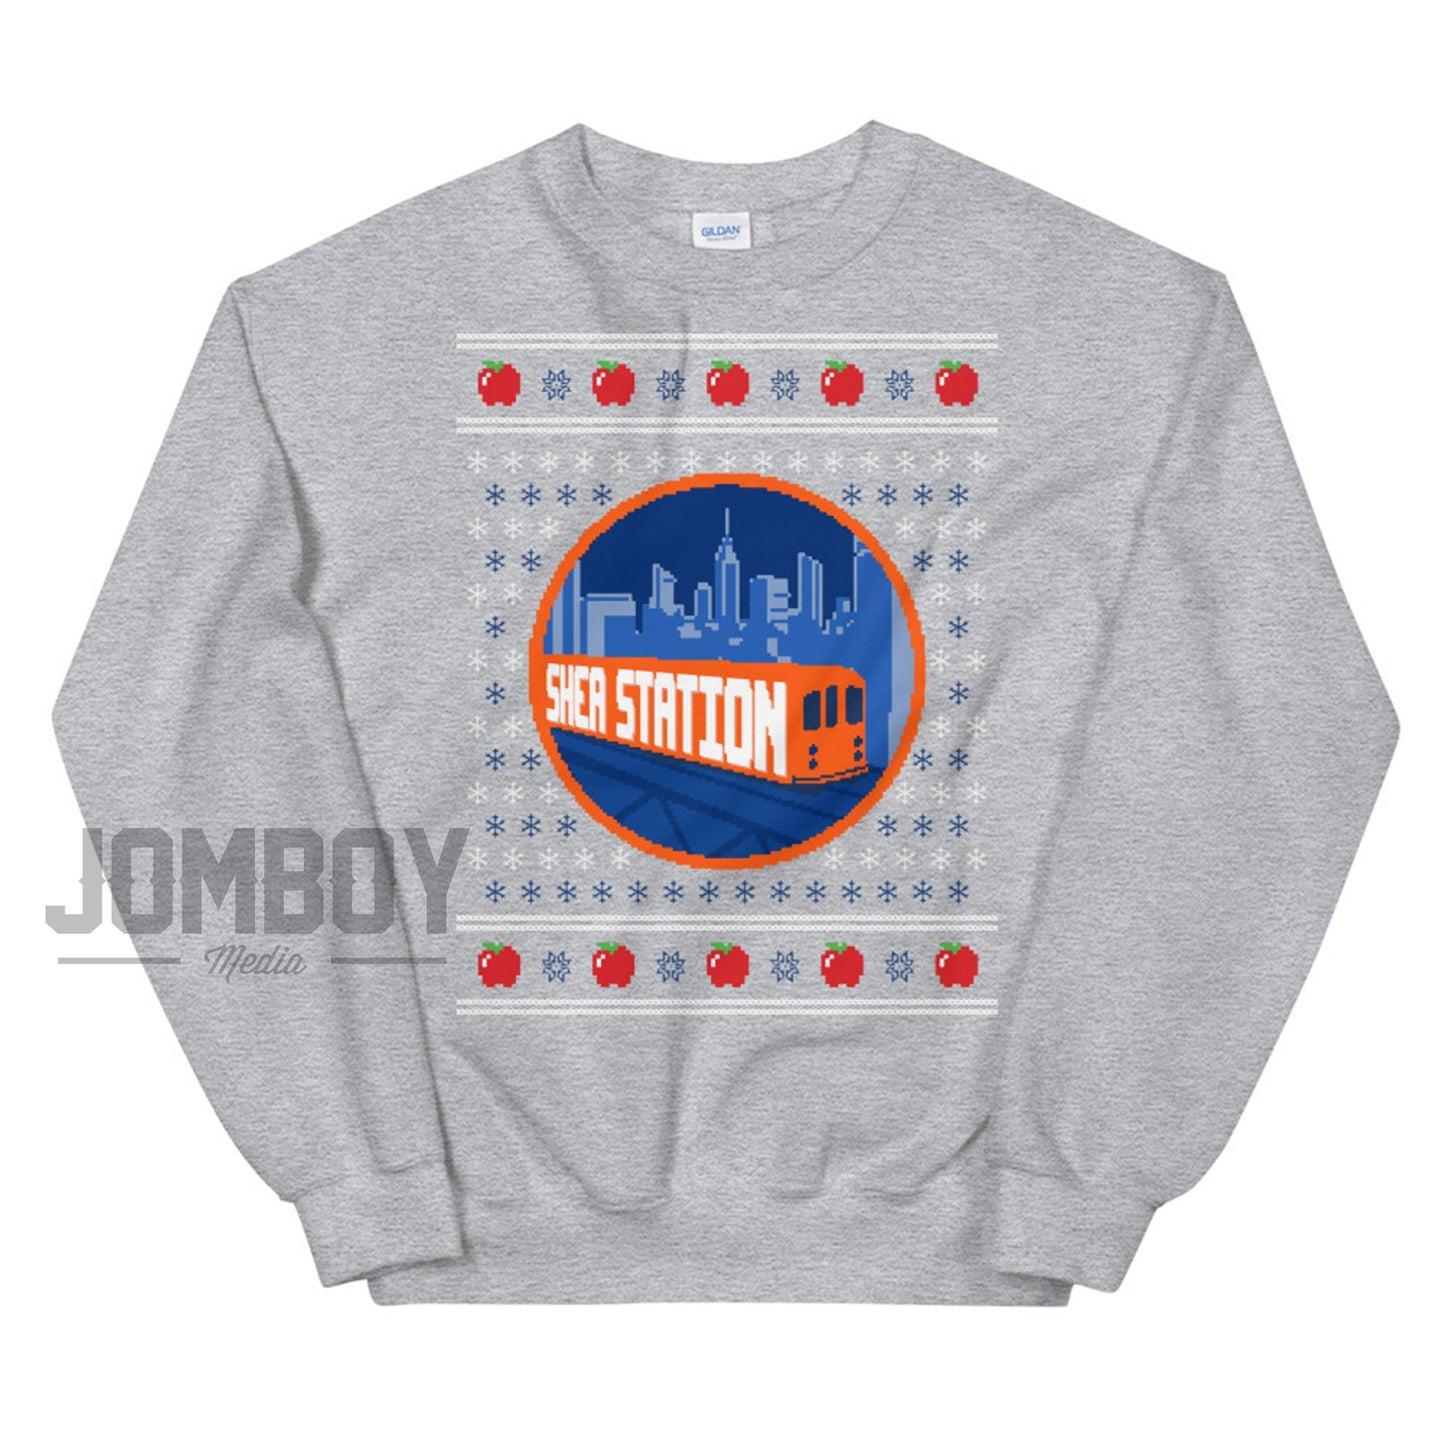 Shea Station | Holiday Sweater - Jomboy Media